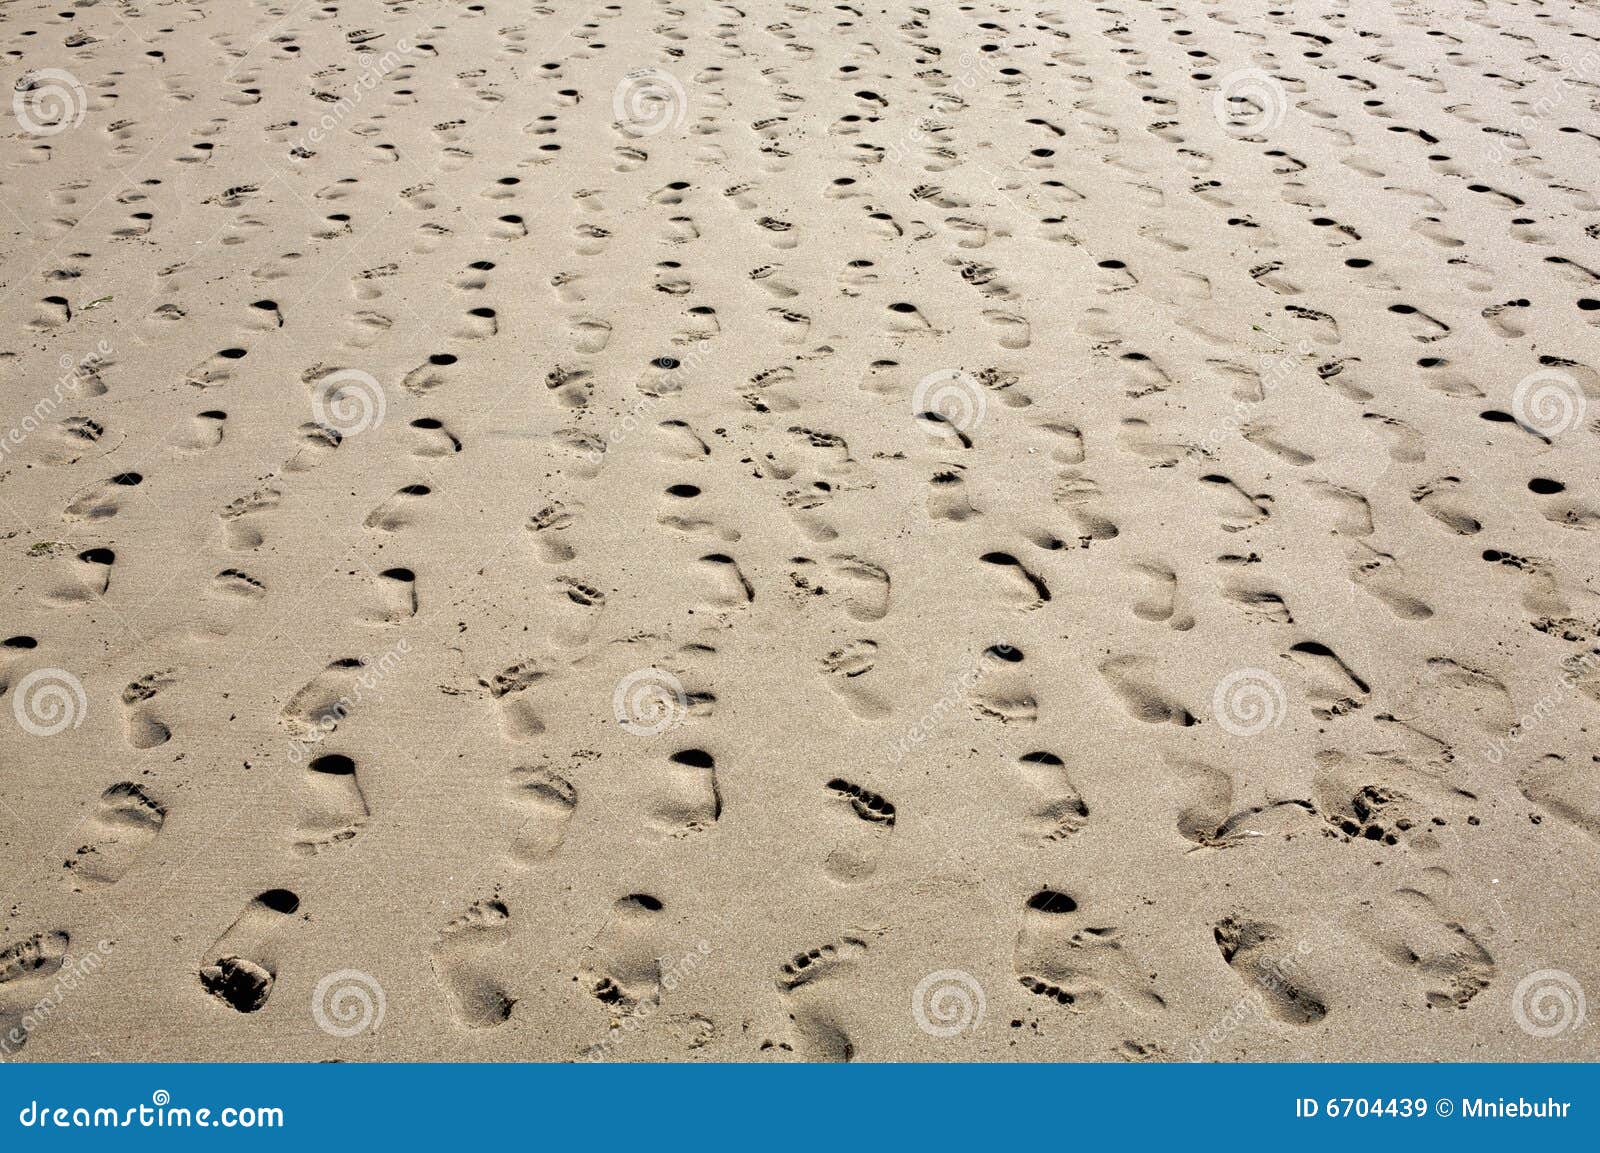 sandy beach - multiple footprints in rows receding